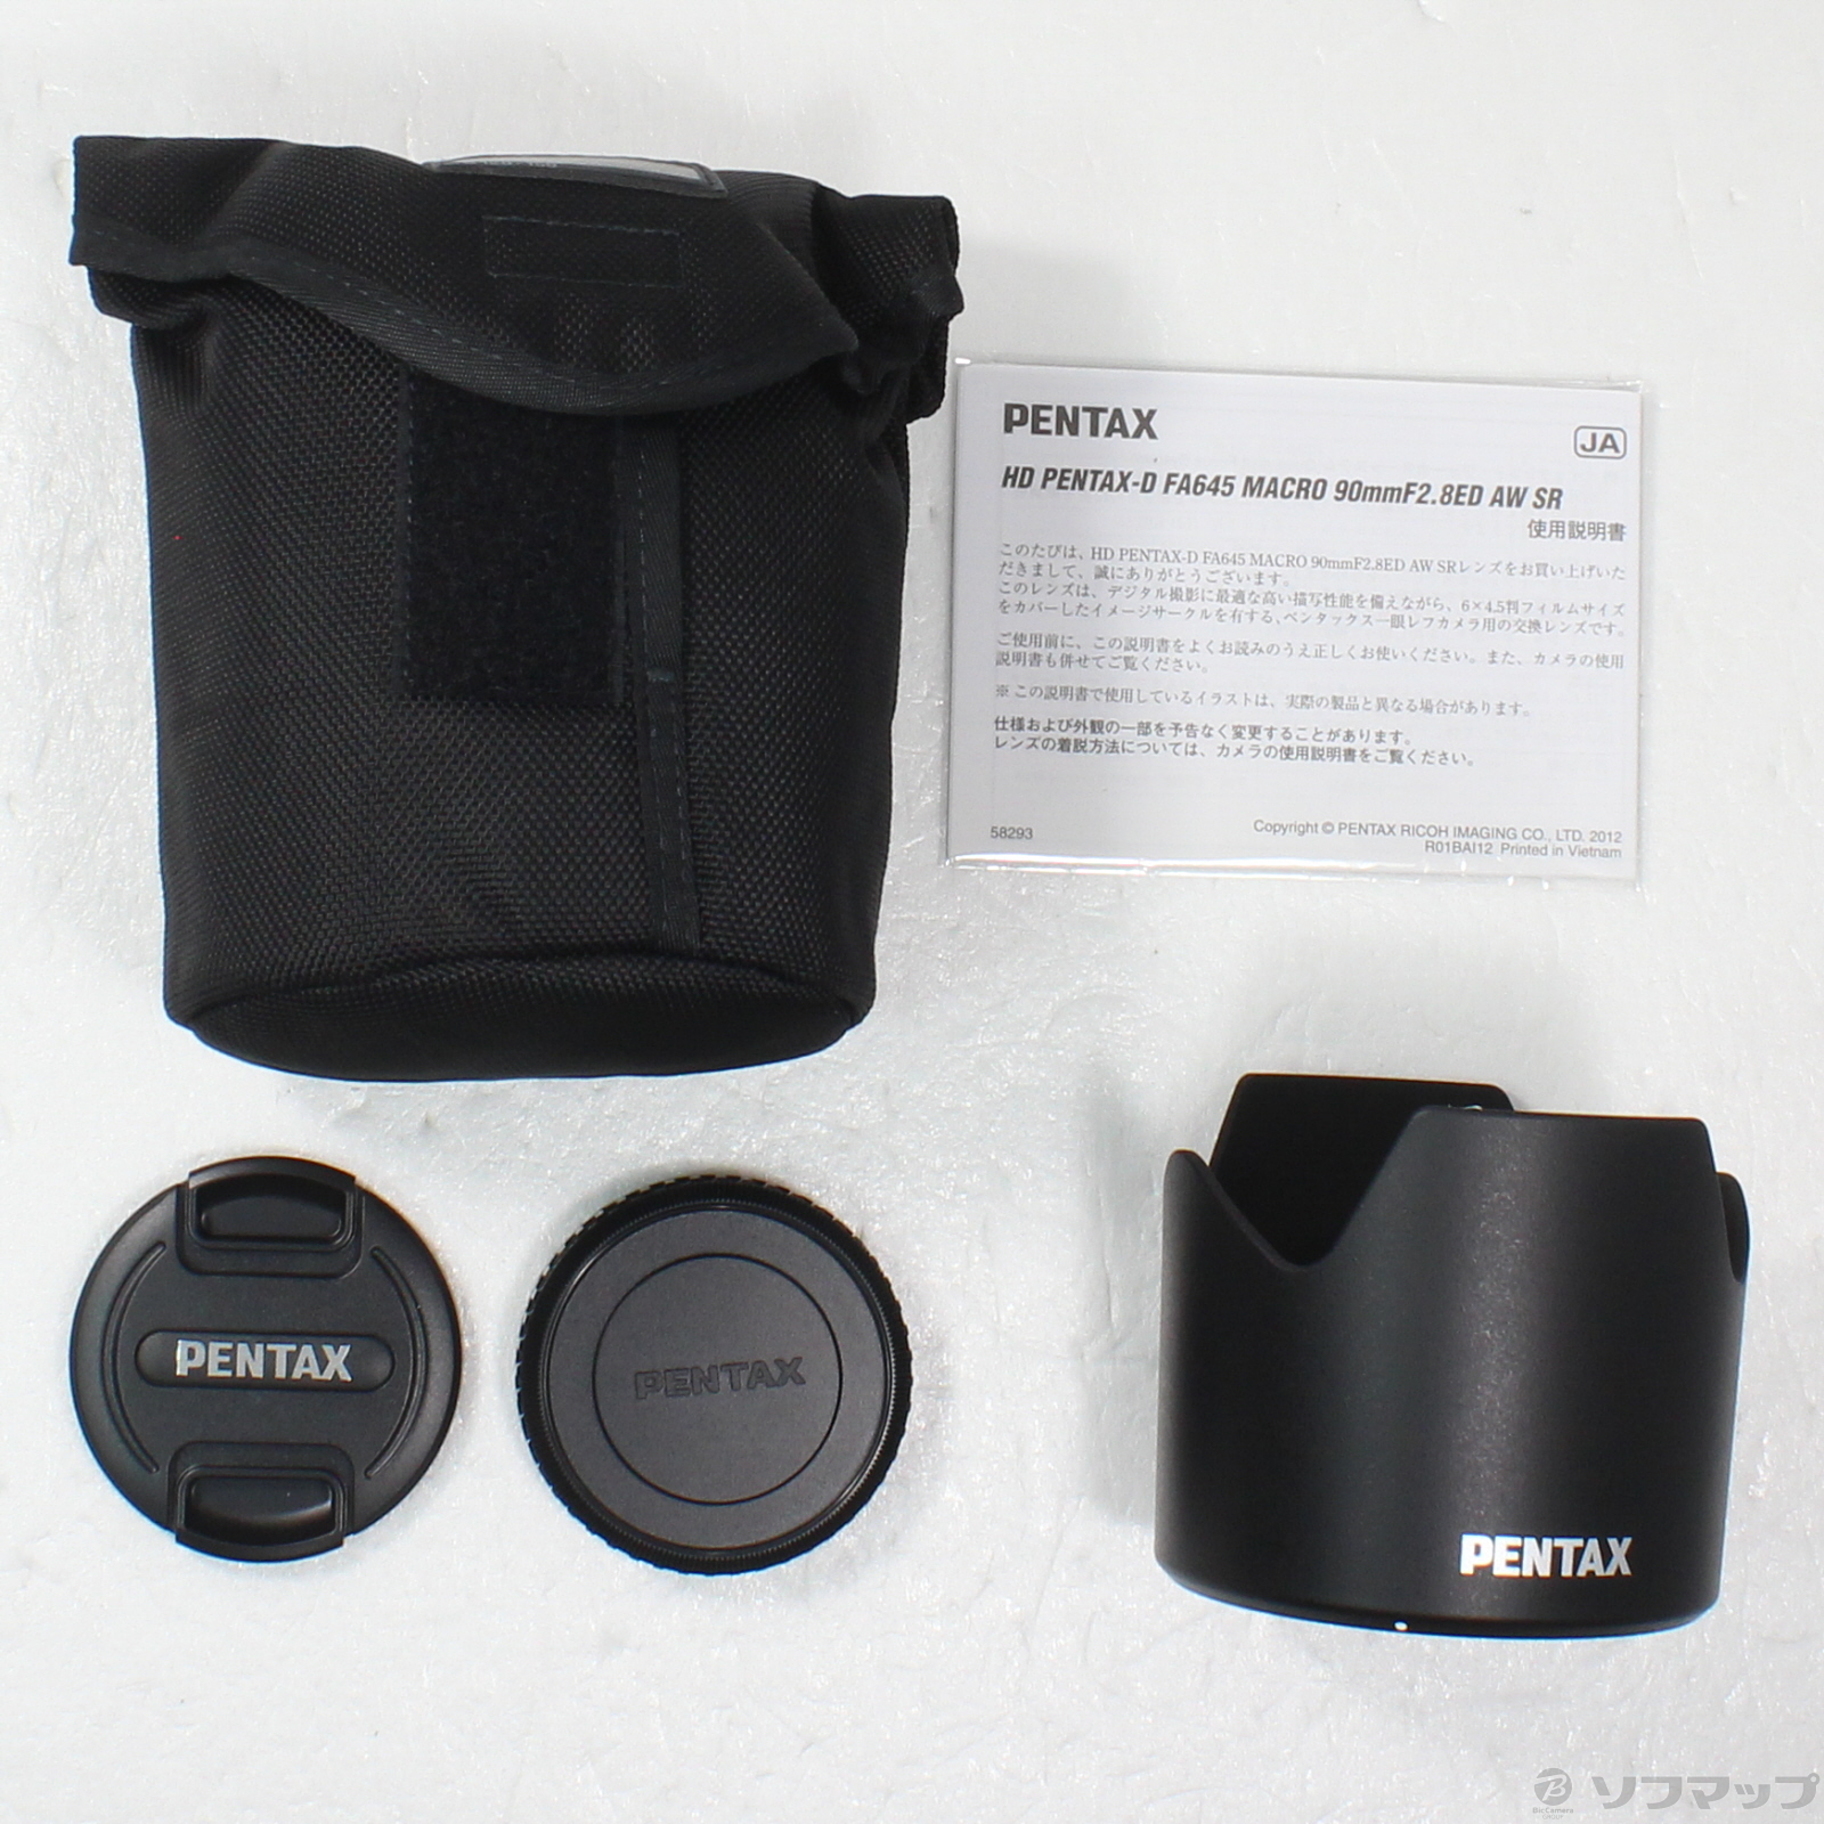 HD PENTAX-D FA645 MACRO 90mm F2.8 ED AW SR